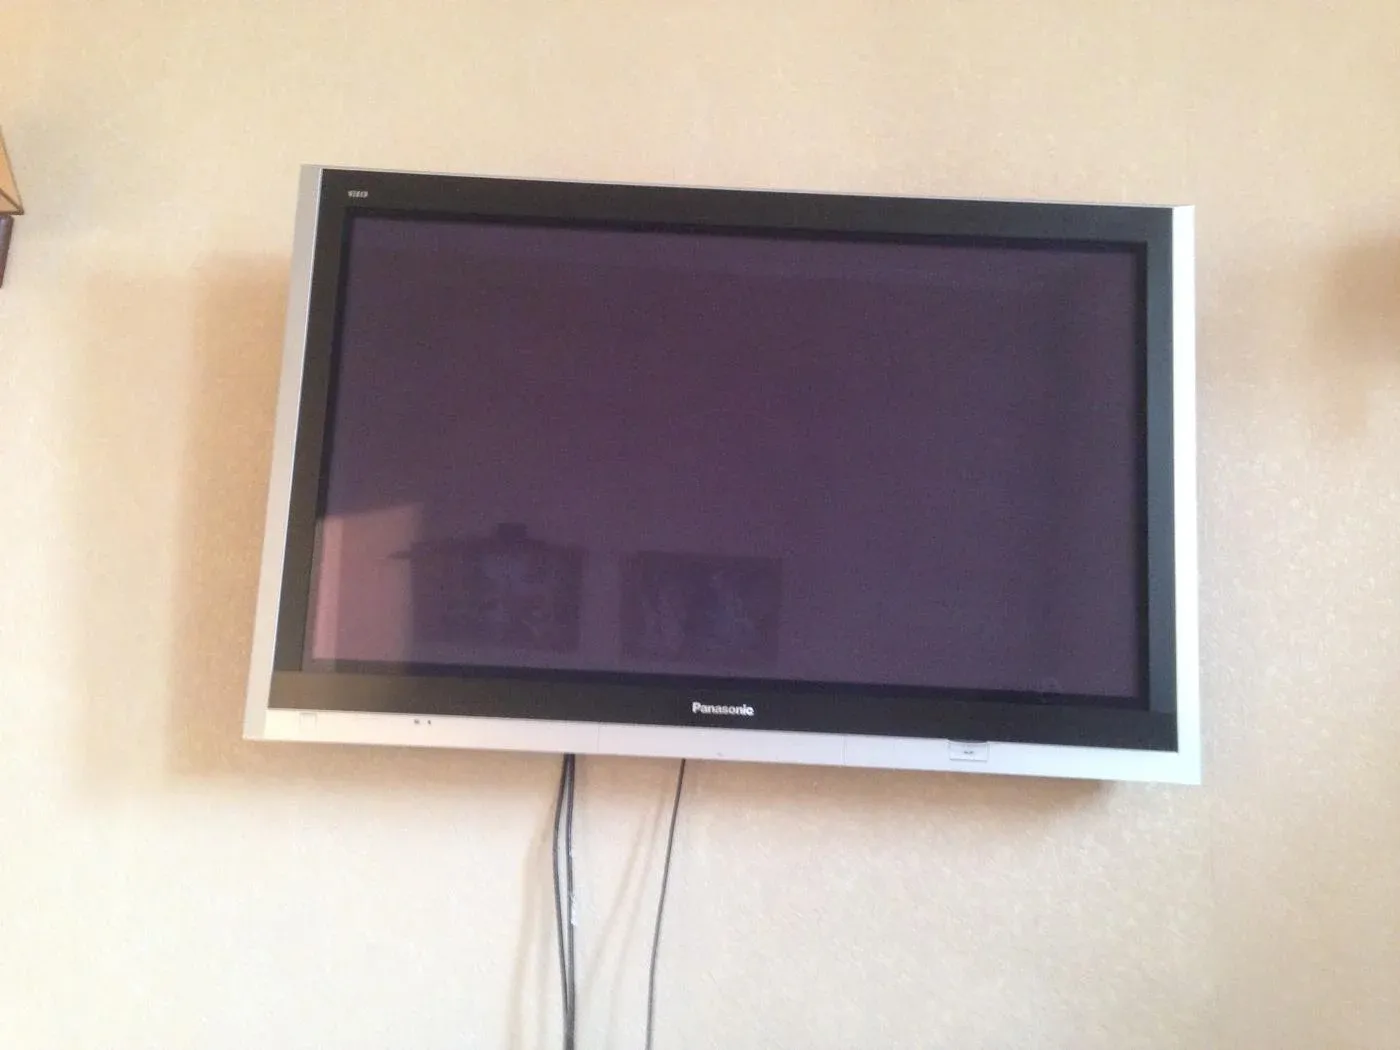 Бу телевизоры в городе. Телевизор маленький плоский. Маленький плазменный телевизор. Маленький плазменный телевизор на кухню. Плоские телевизоры на стену недорогие.